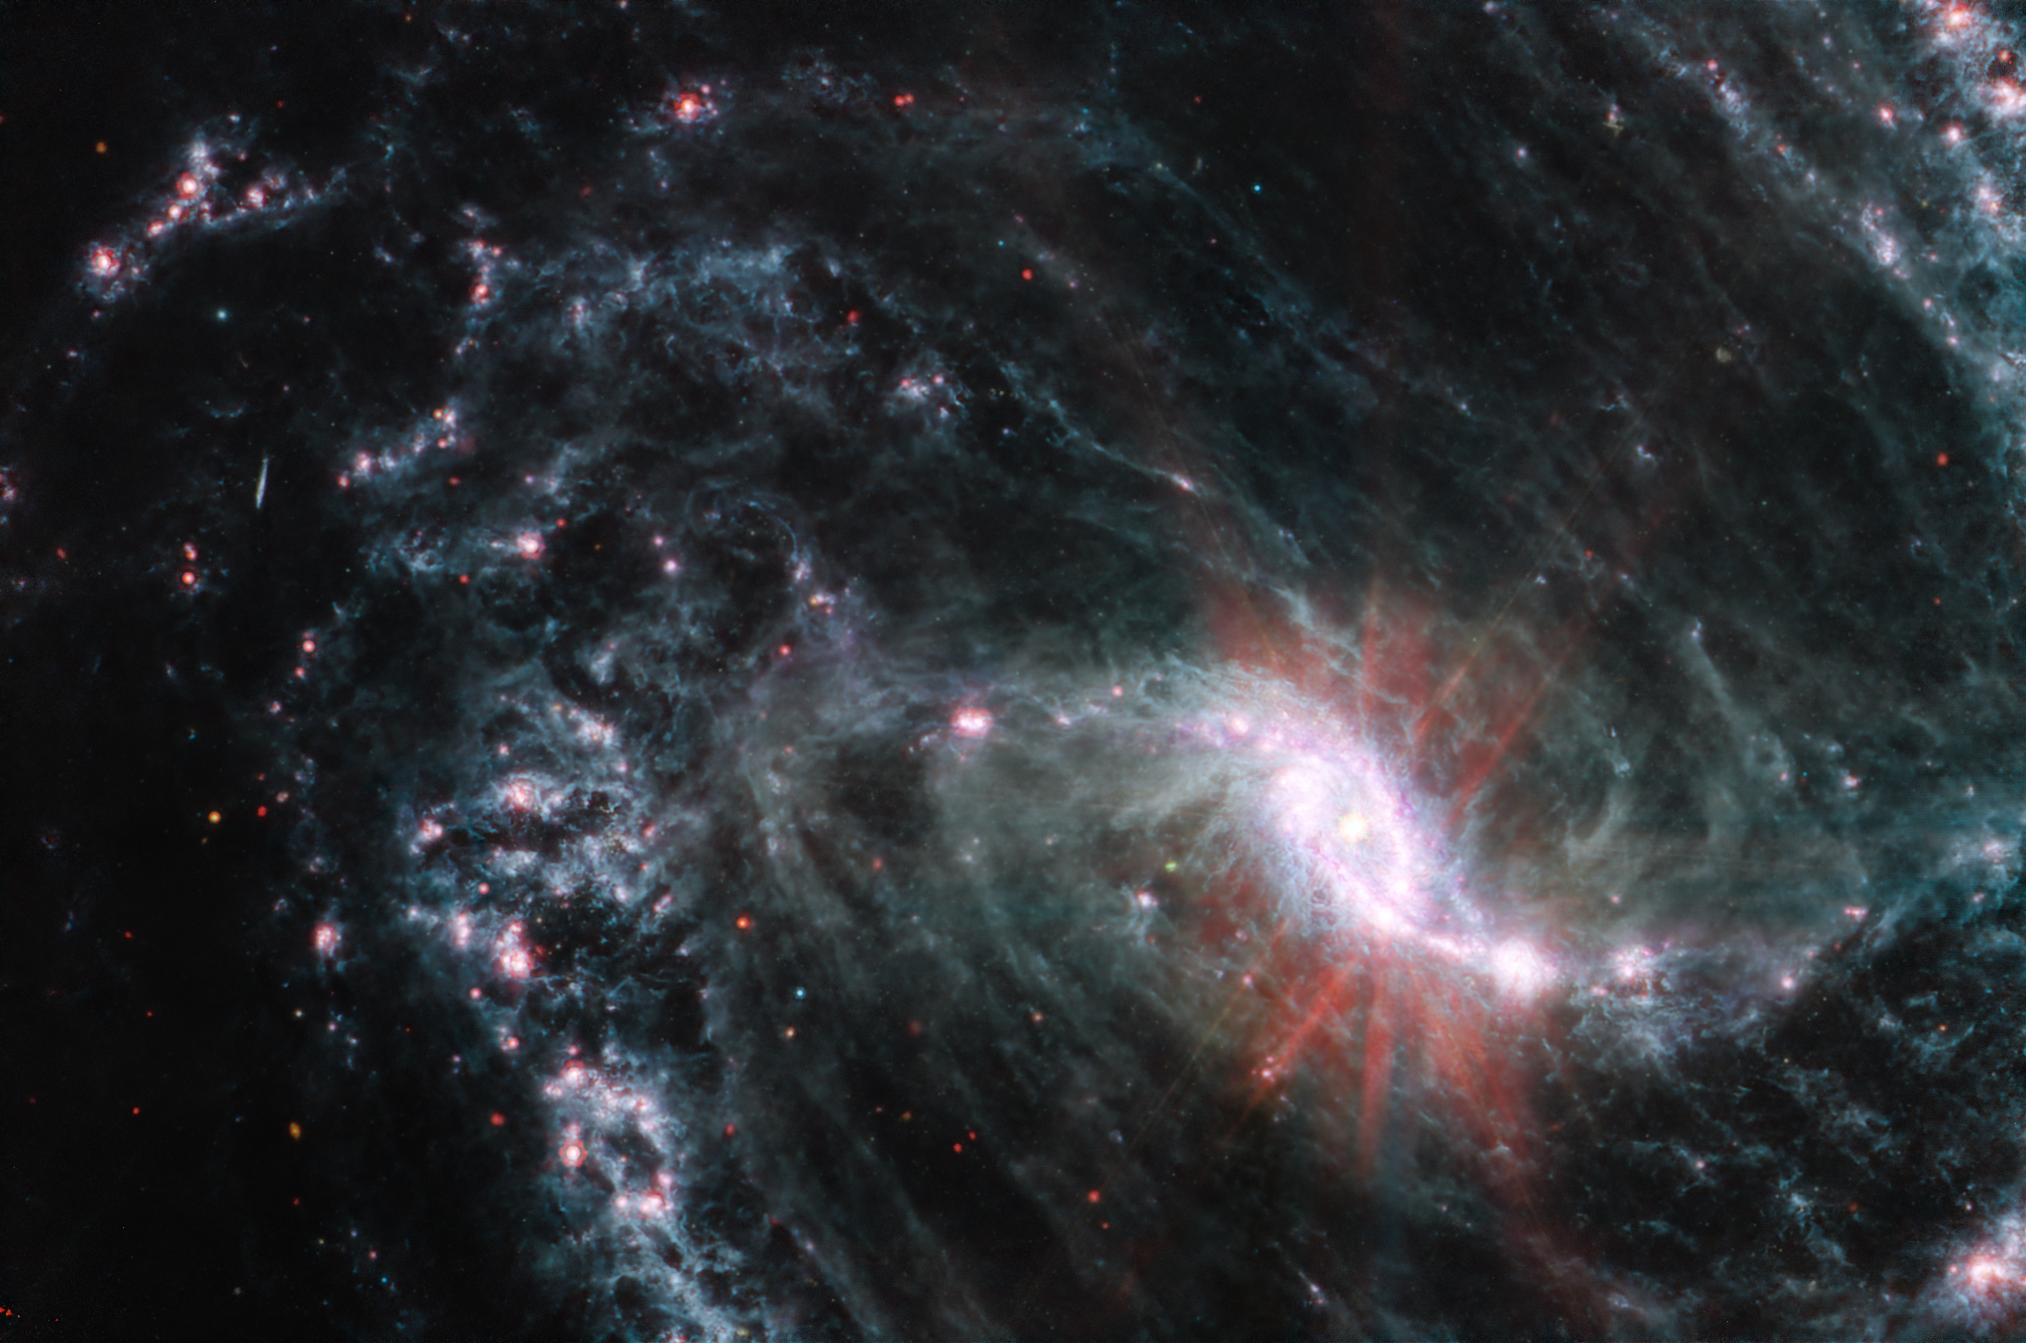 Spiral'naya galaktika s peremychkoi NGC 1365 ot teleskopa "Dzheims Vebb"